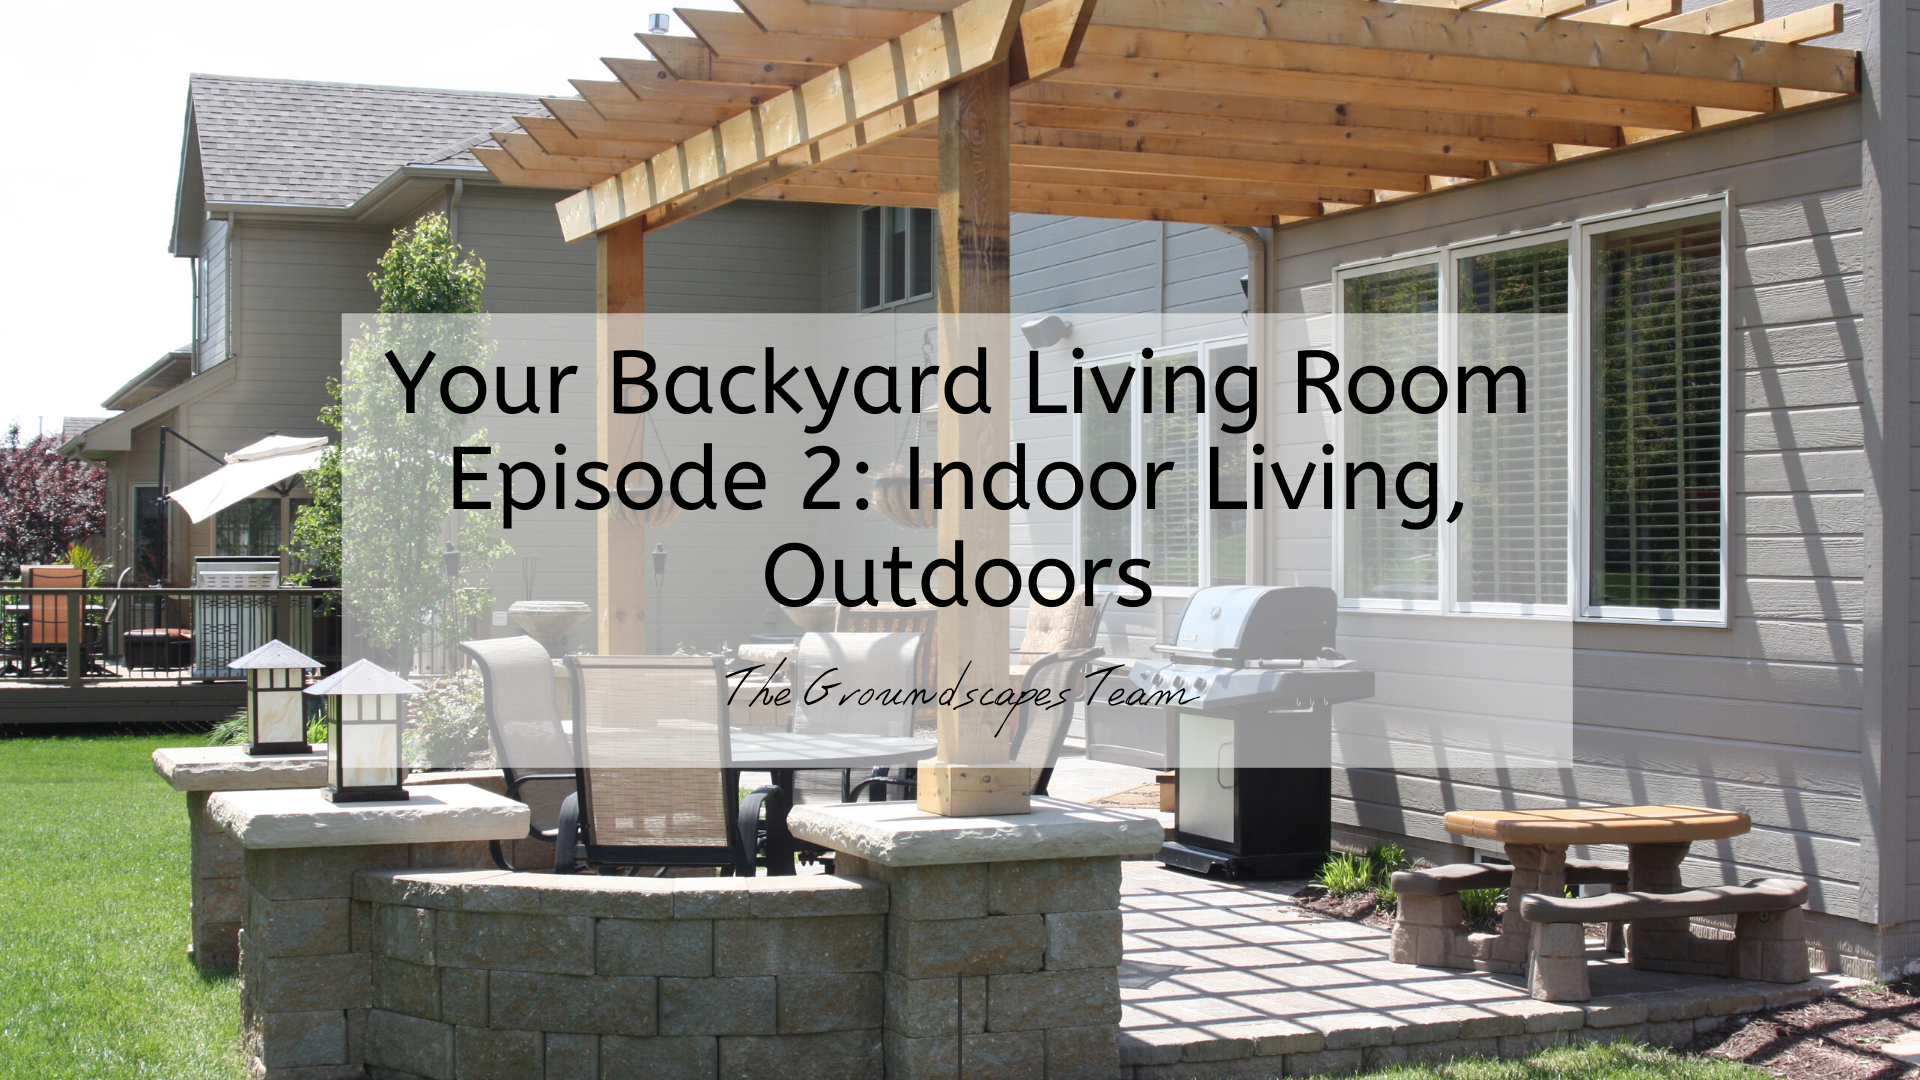 Your Backyard Living Room Episode 2: Indoor Living, Outdoors